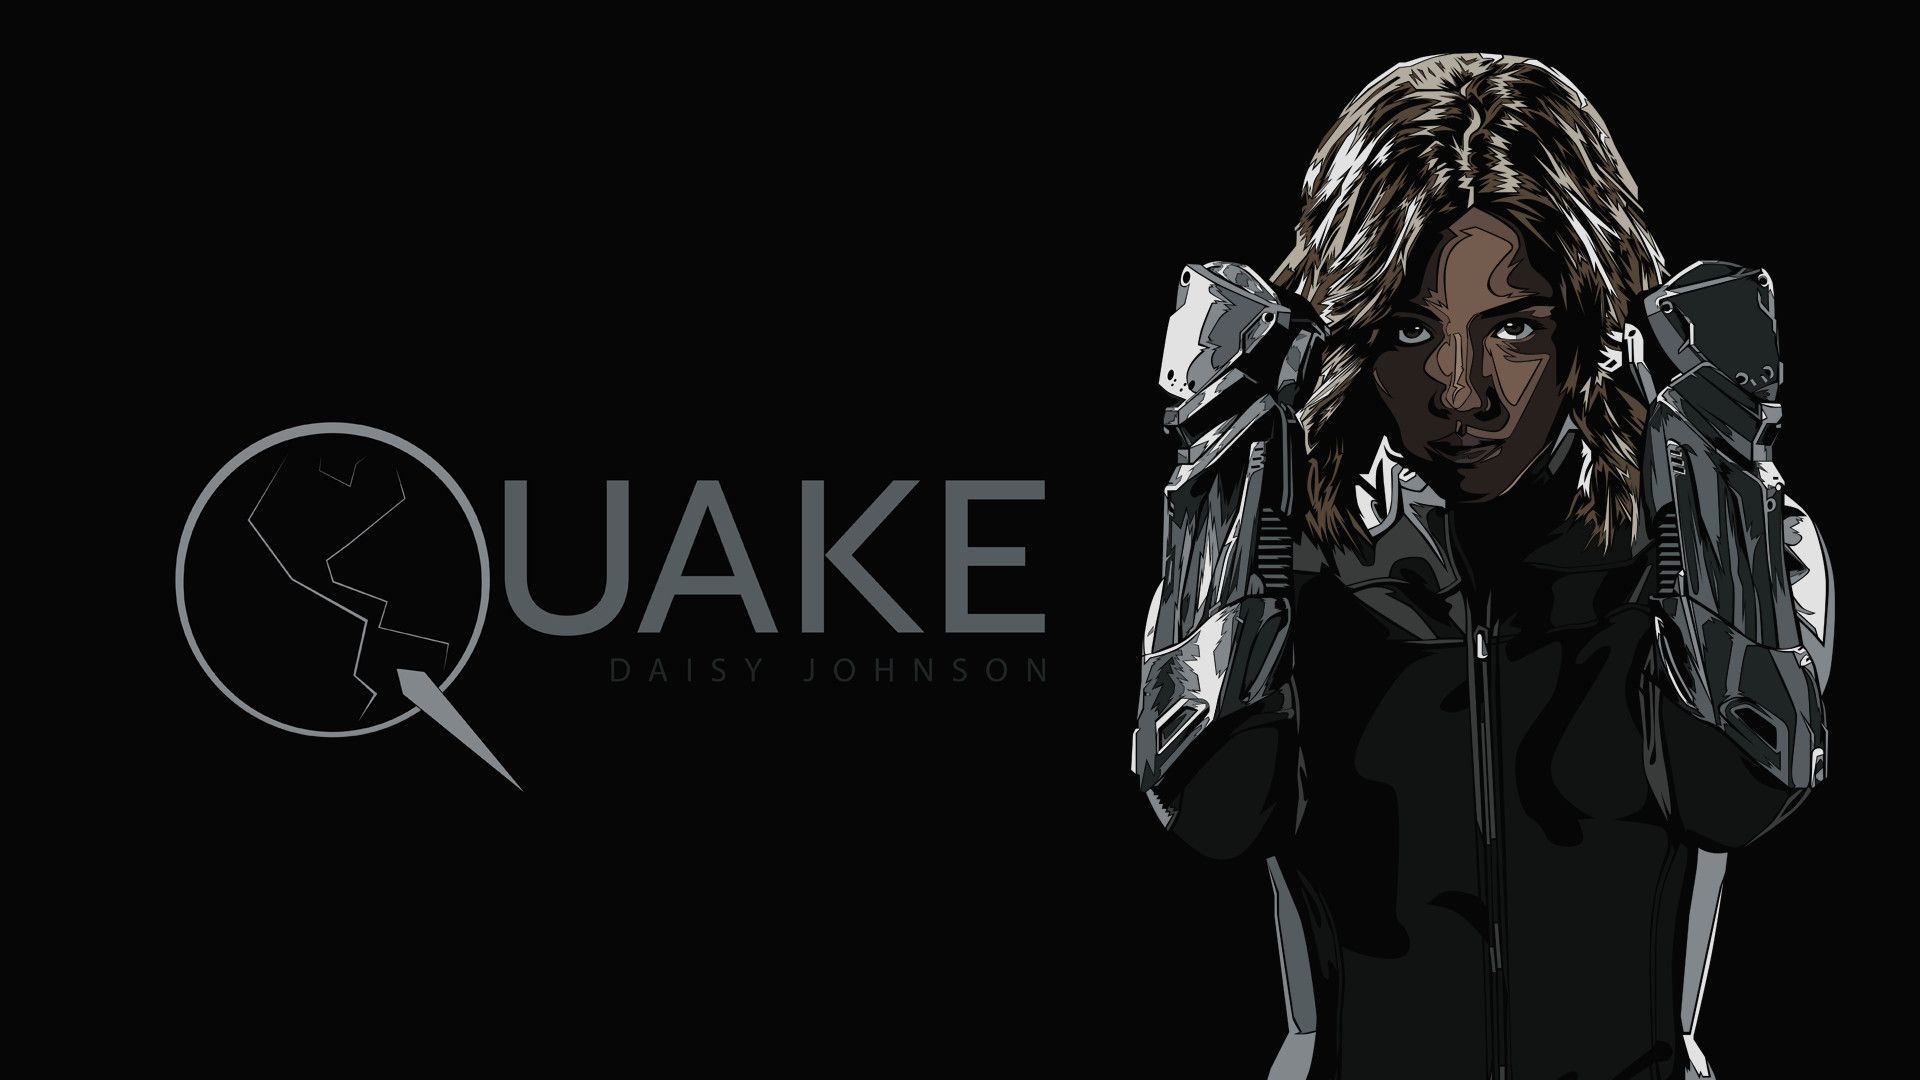 Quake a.k.a. Daisy Johnson, TMR YST